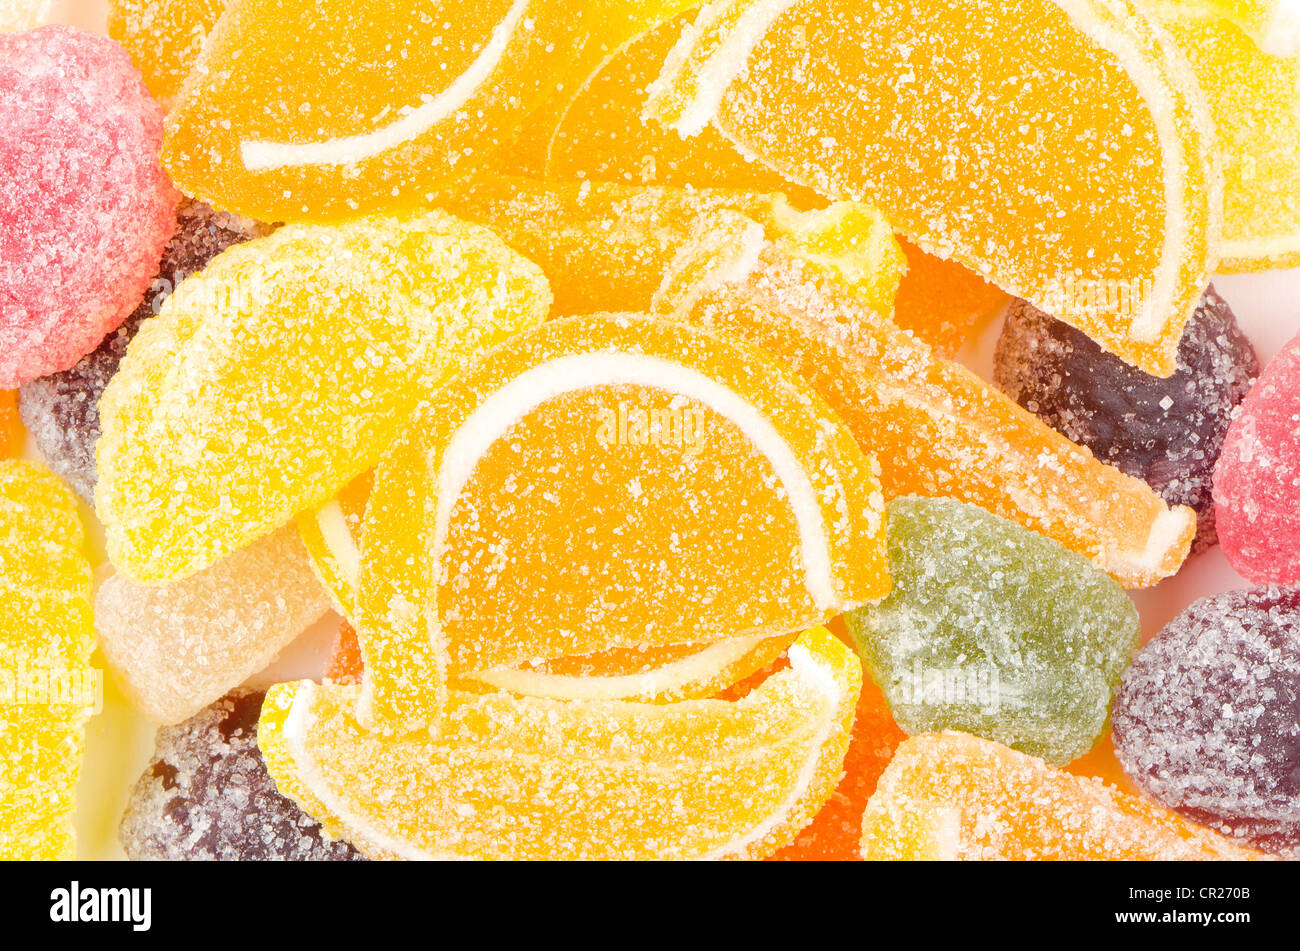 Sugar coated orange and lemon sweet confectionery Stock Photo